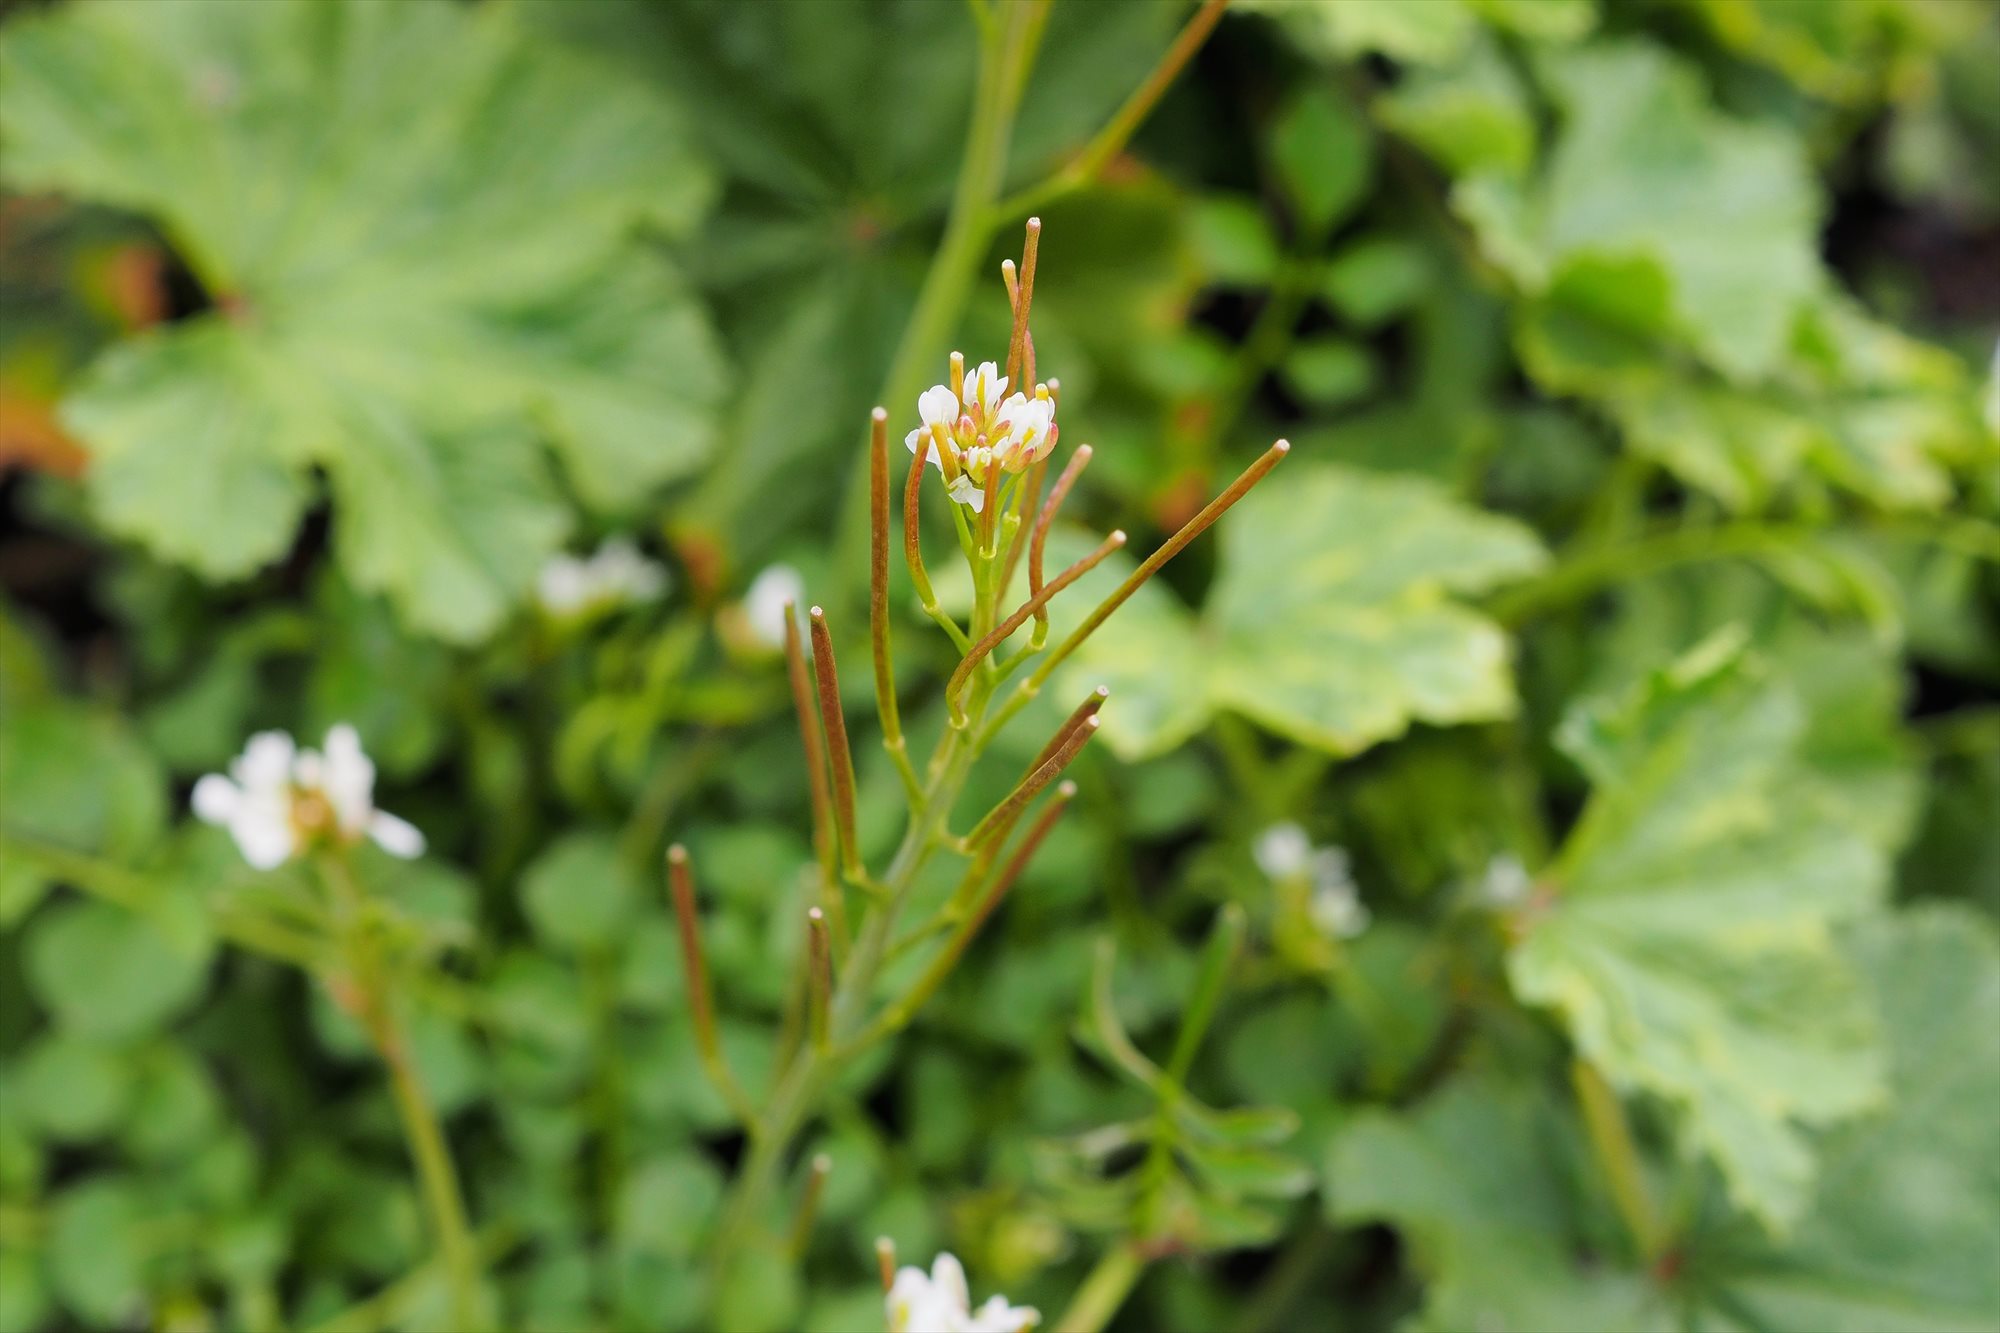 初春 春の雑草 まだ寒い時期に咲く小さな白い花 ミチタネツケバナ タネツケバナとの違いは Saluton Mondo 和花の作業部屋